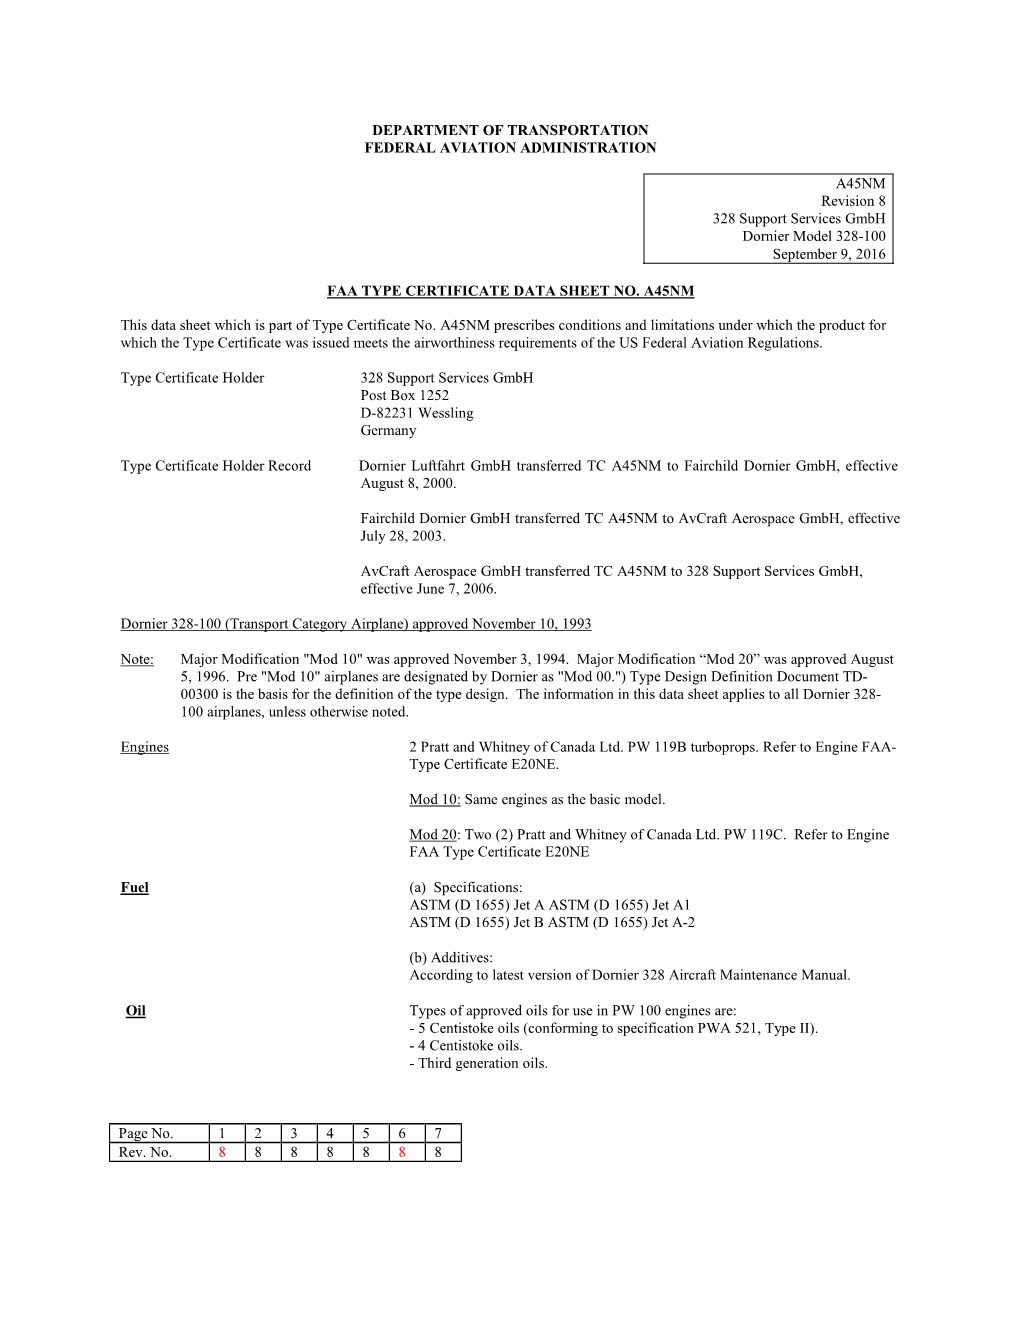 Faa Type Certificate Data Sheet No. A45nm